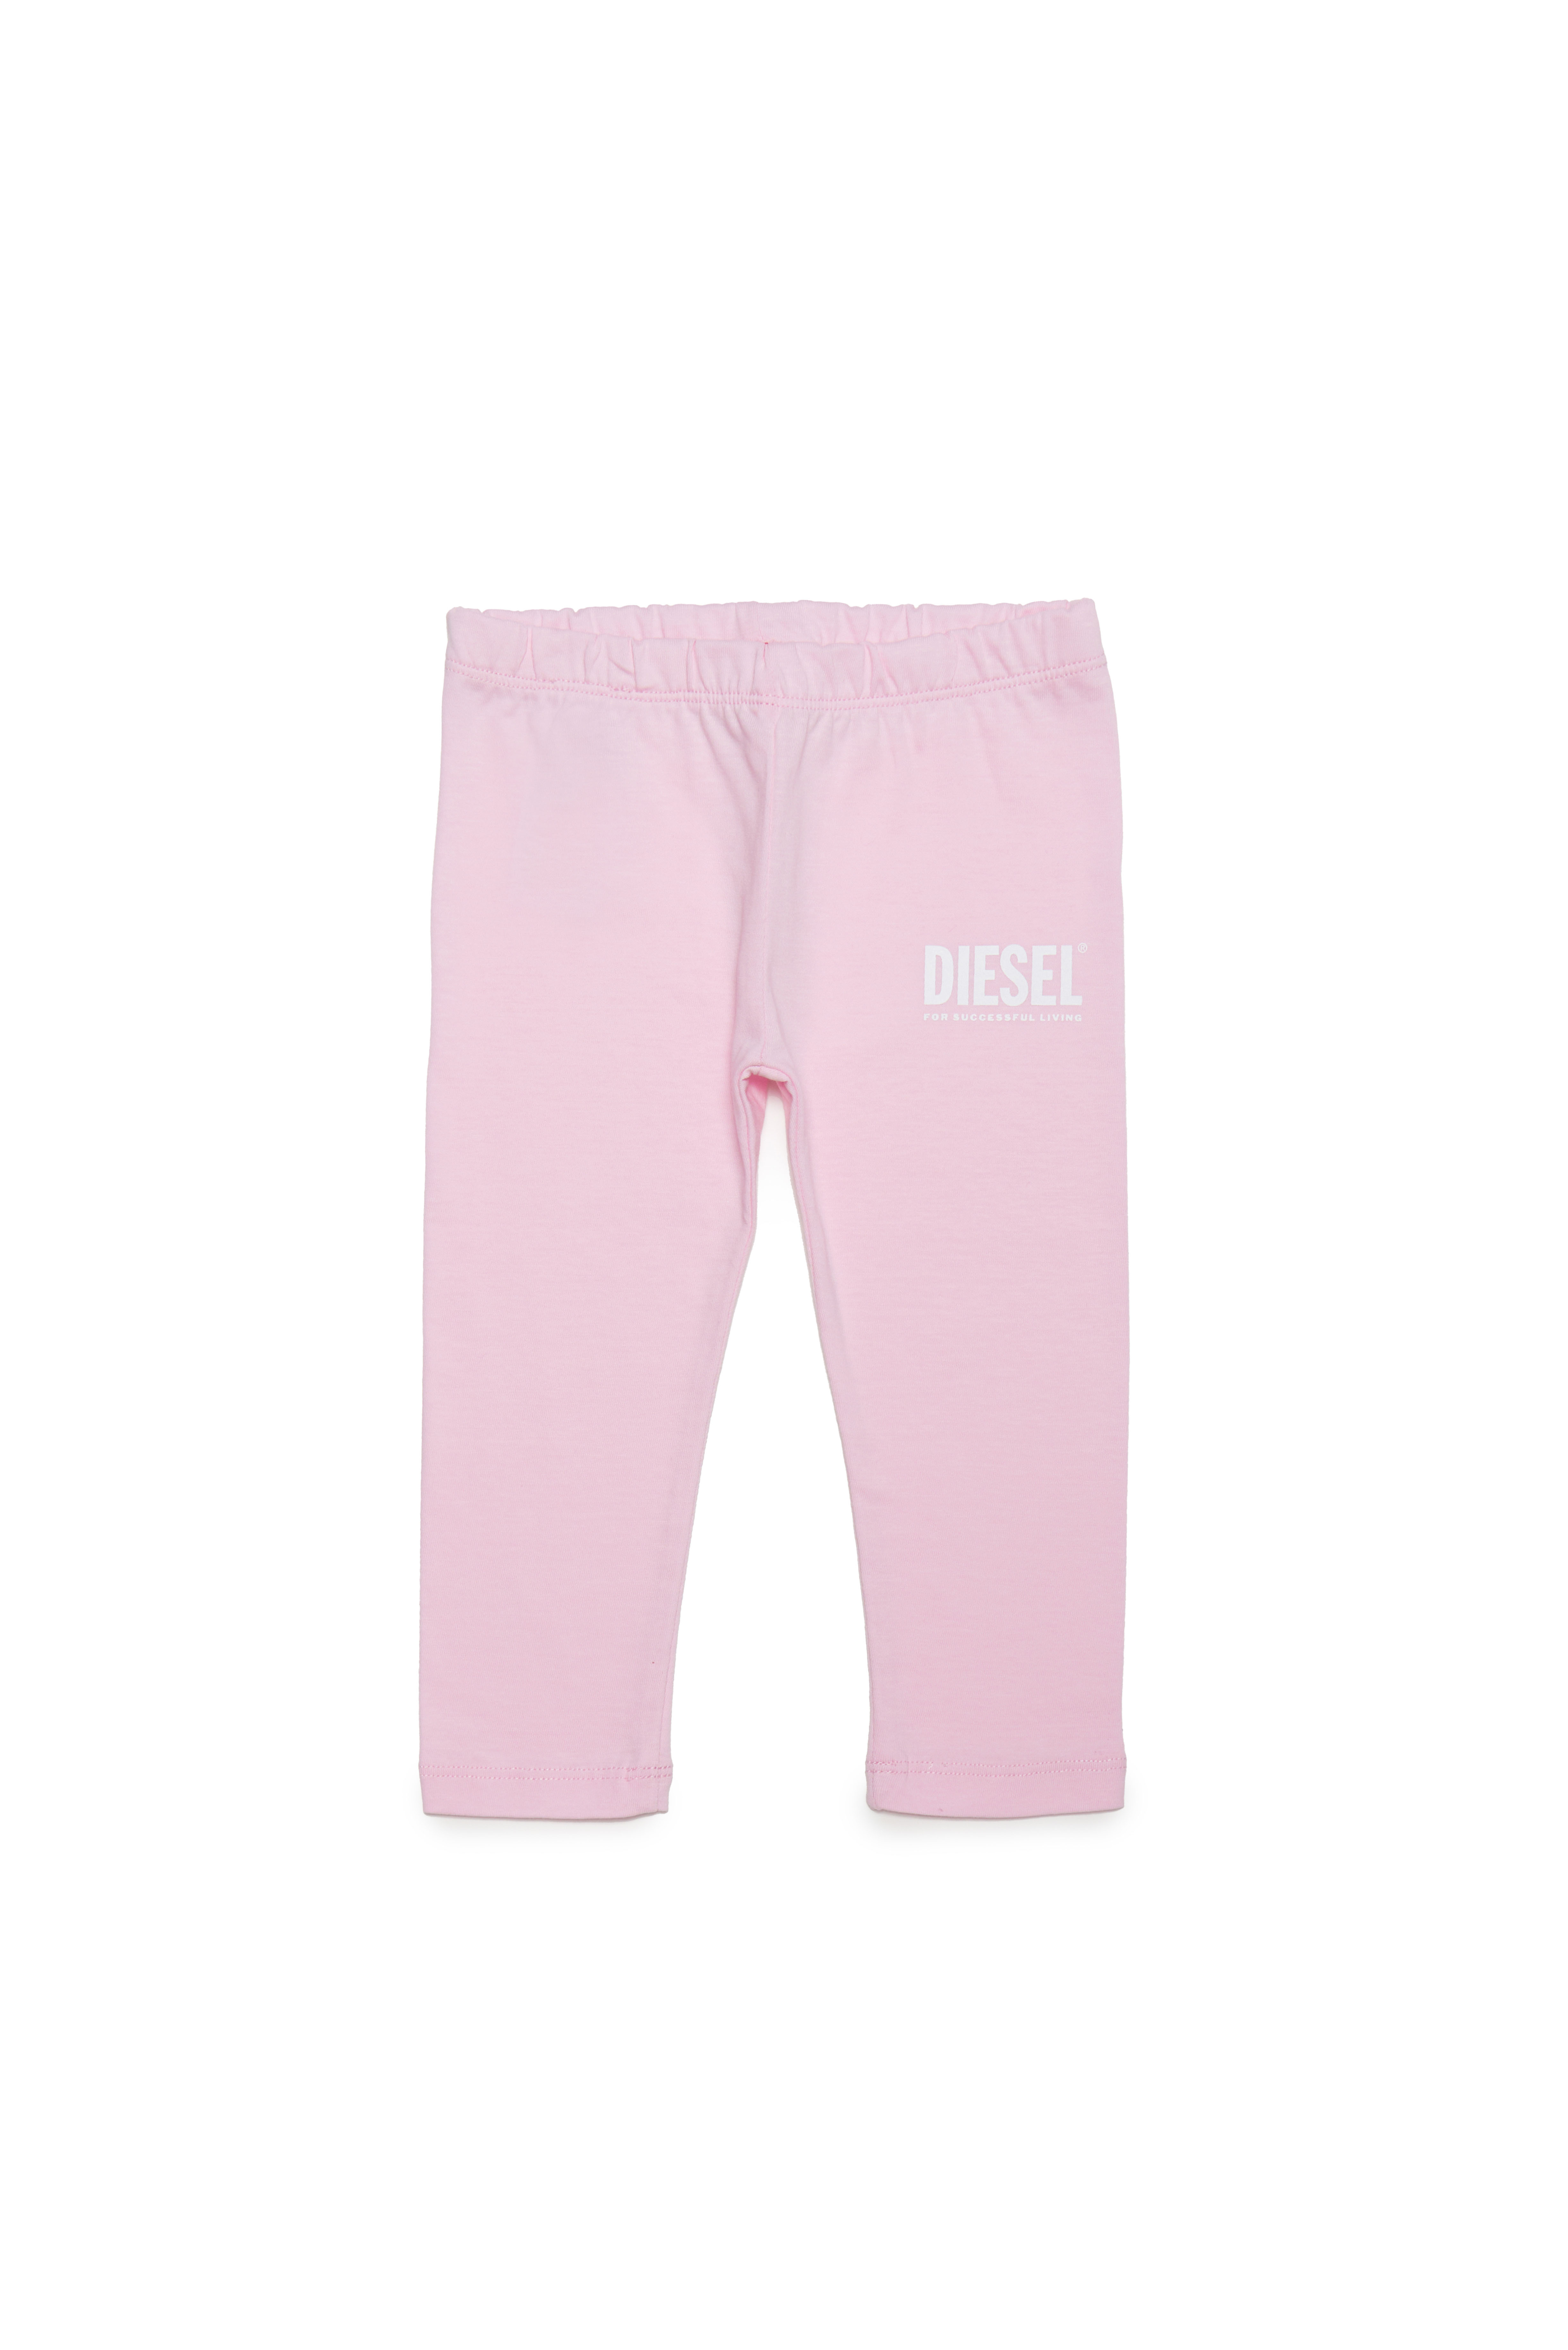 Diesel - Pantalones de algodón con estampado de logotipo - Pantalones - Mujer - Rosa